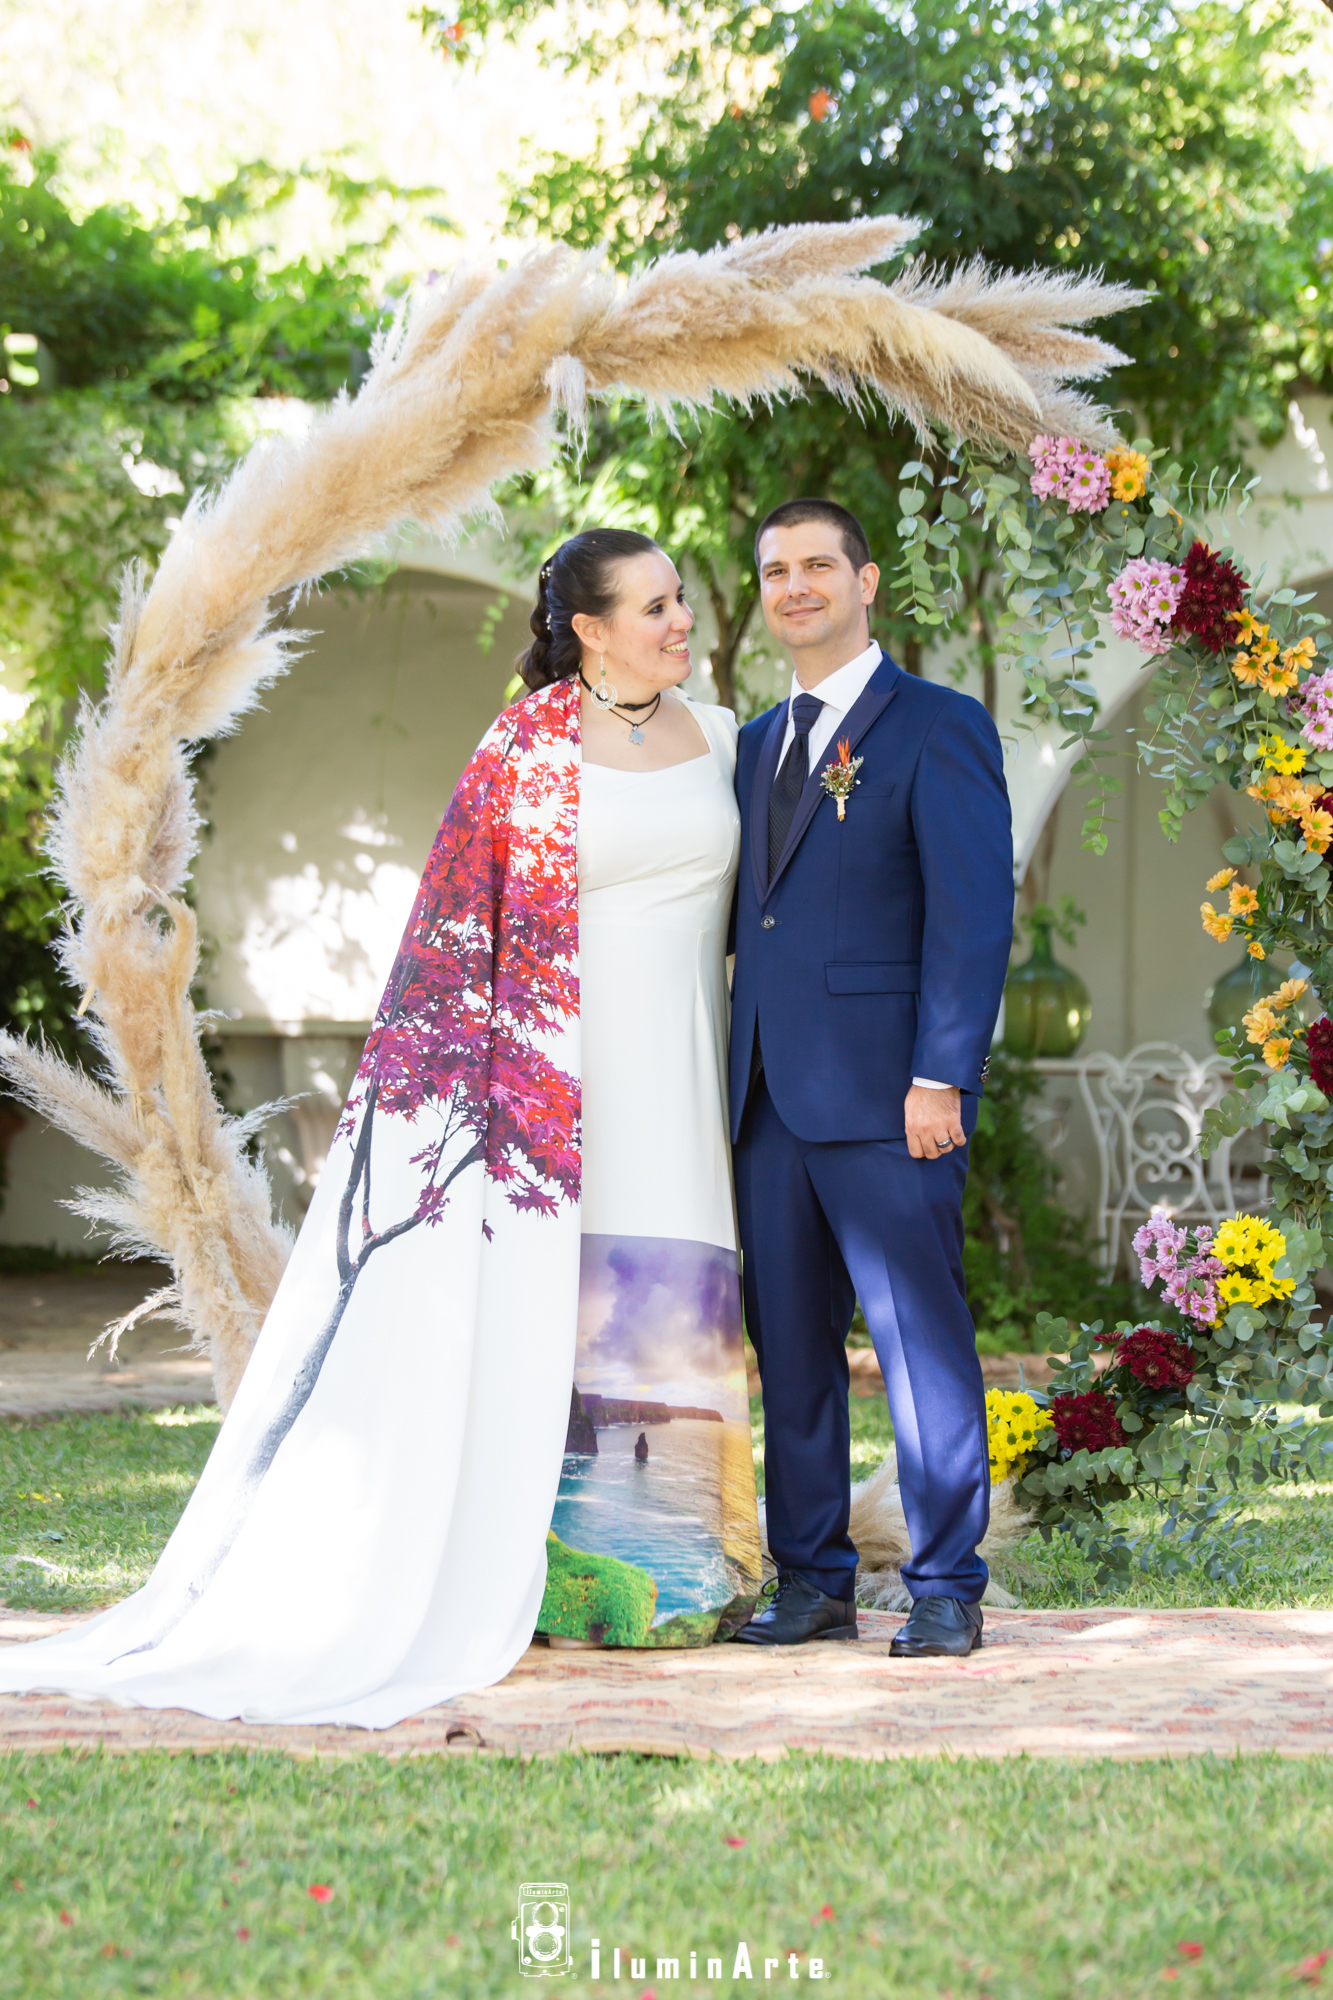 pareja de novios en su boda, con una decoración floral y un arco al fondo, la novia lleva un vestido de colores